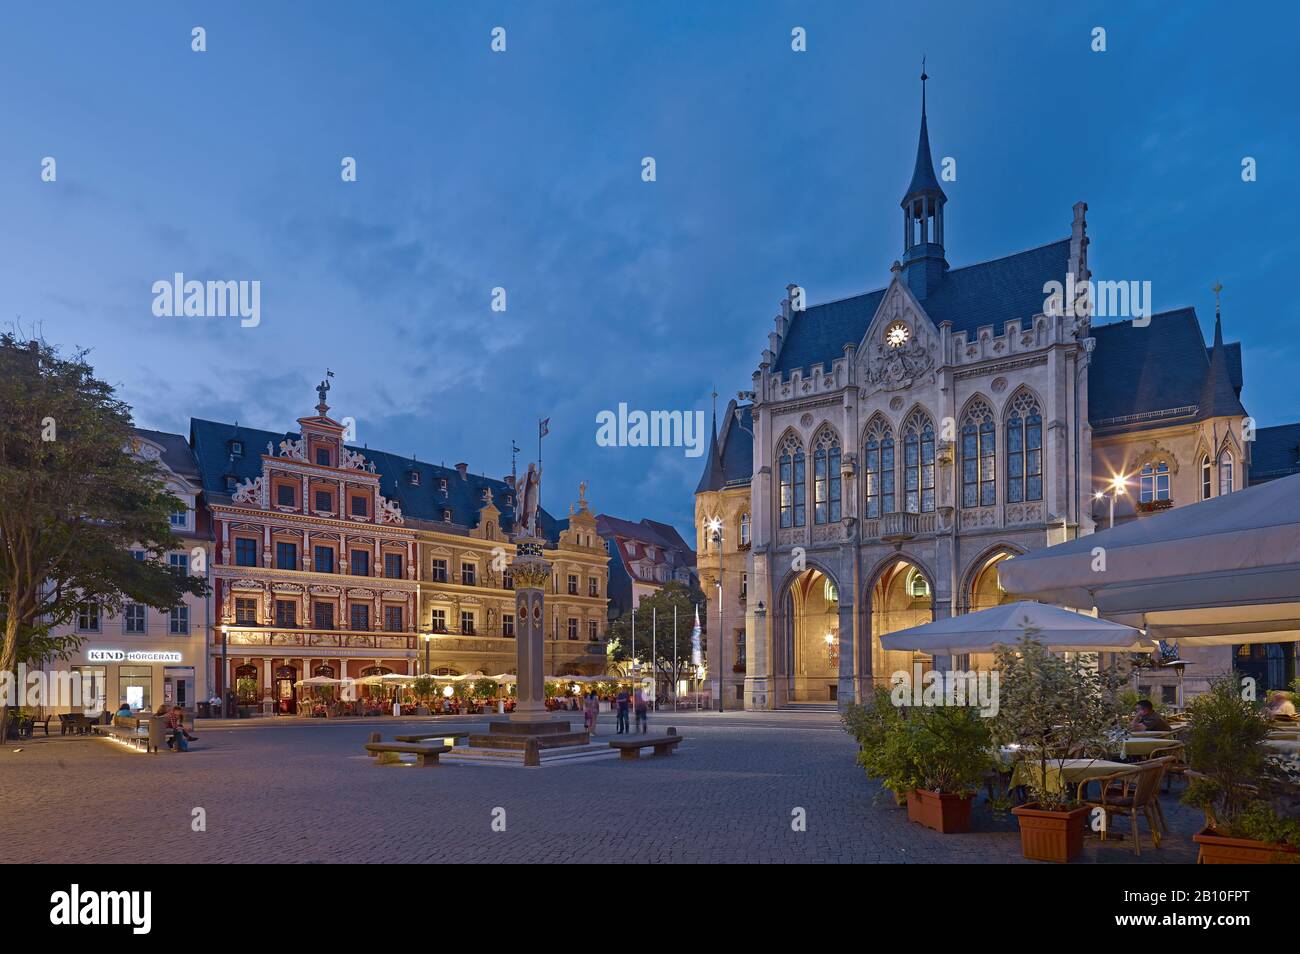 Fischmarkt mit Haus zum breiten Hörnchen, Rolandsäule und Rathaus in Erfurt, Thüringen, Deutschland Stockfoto